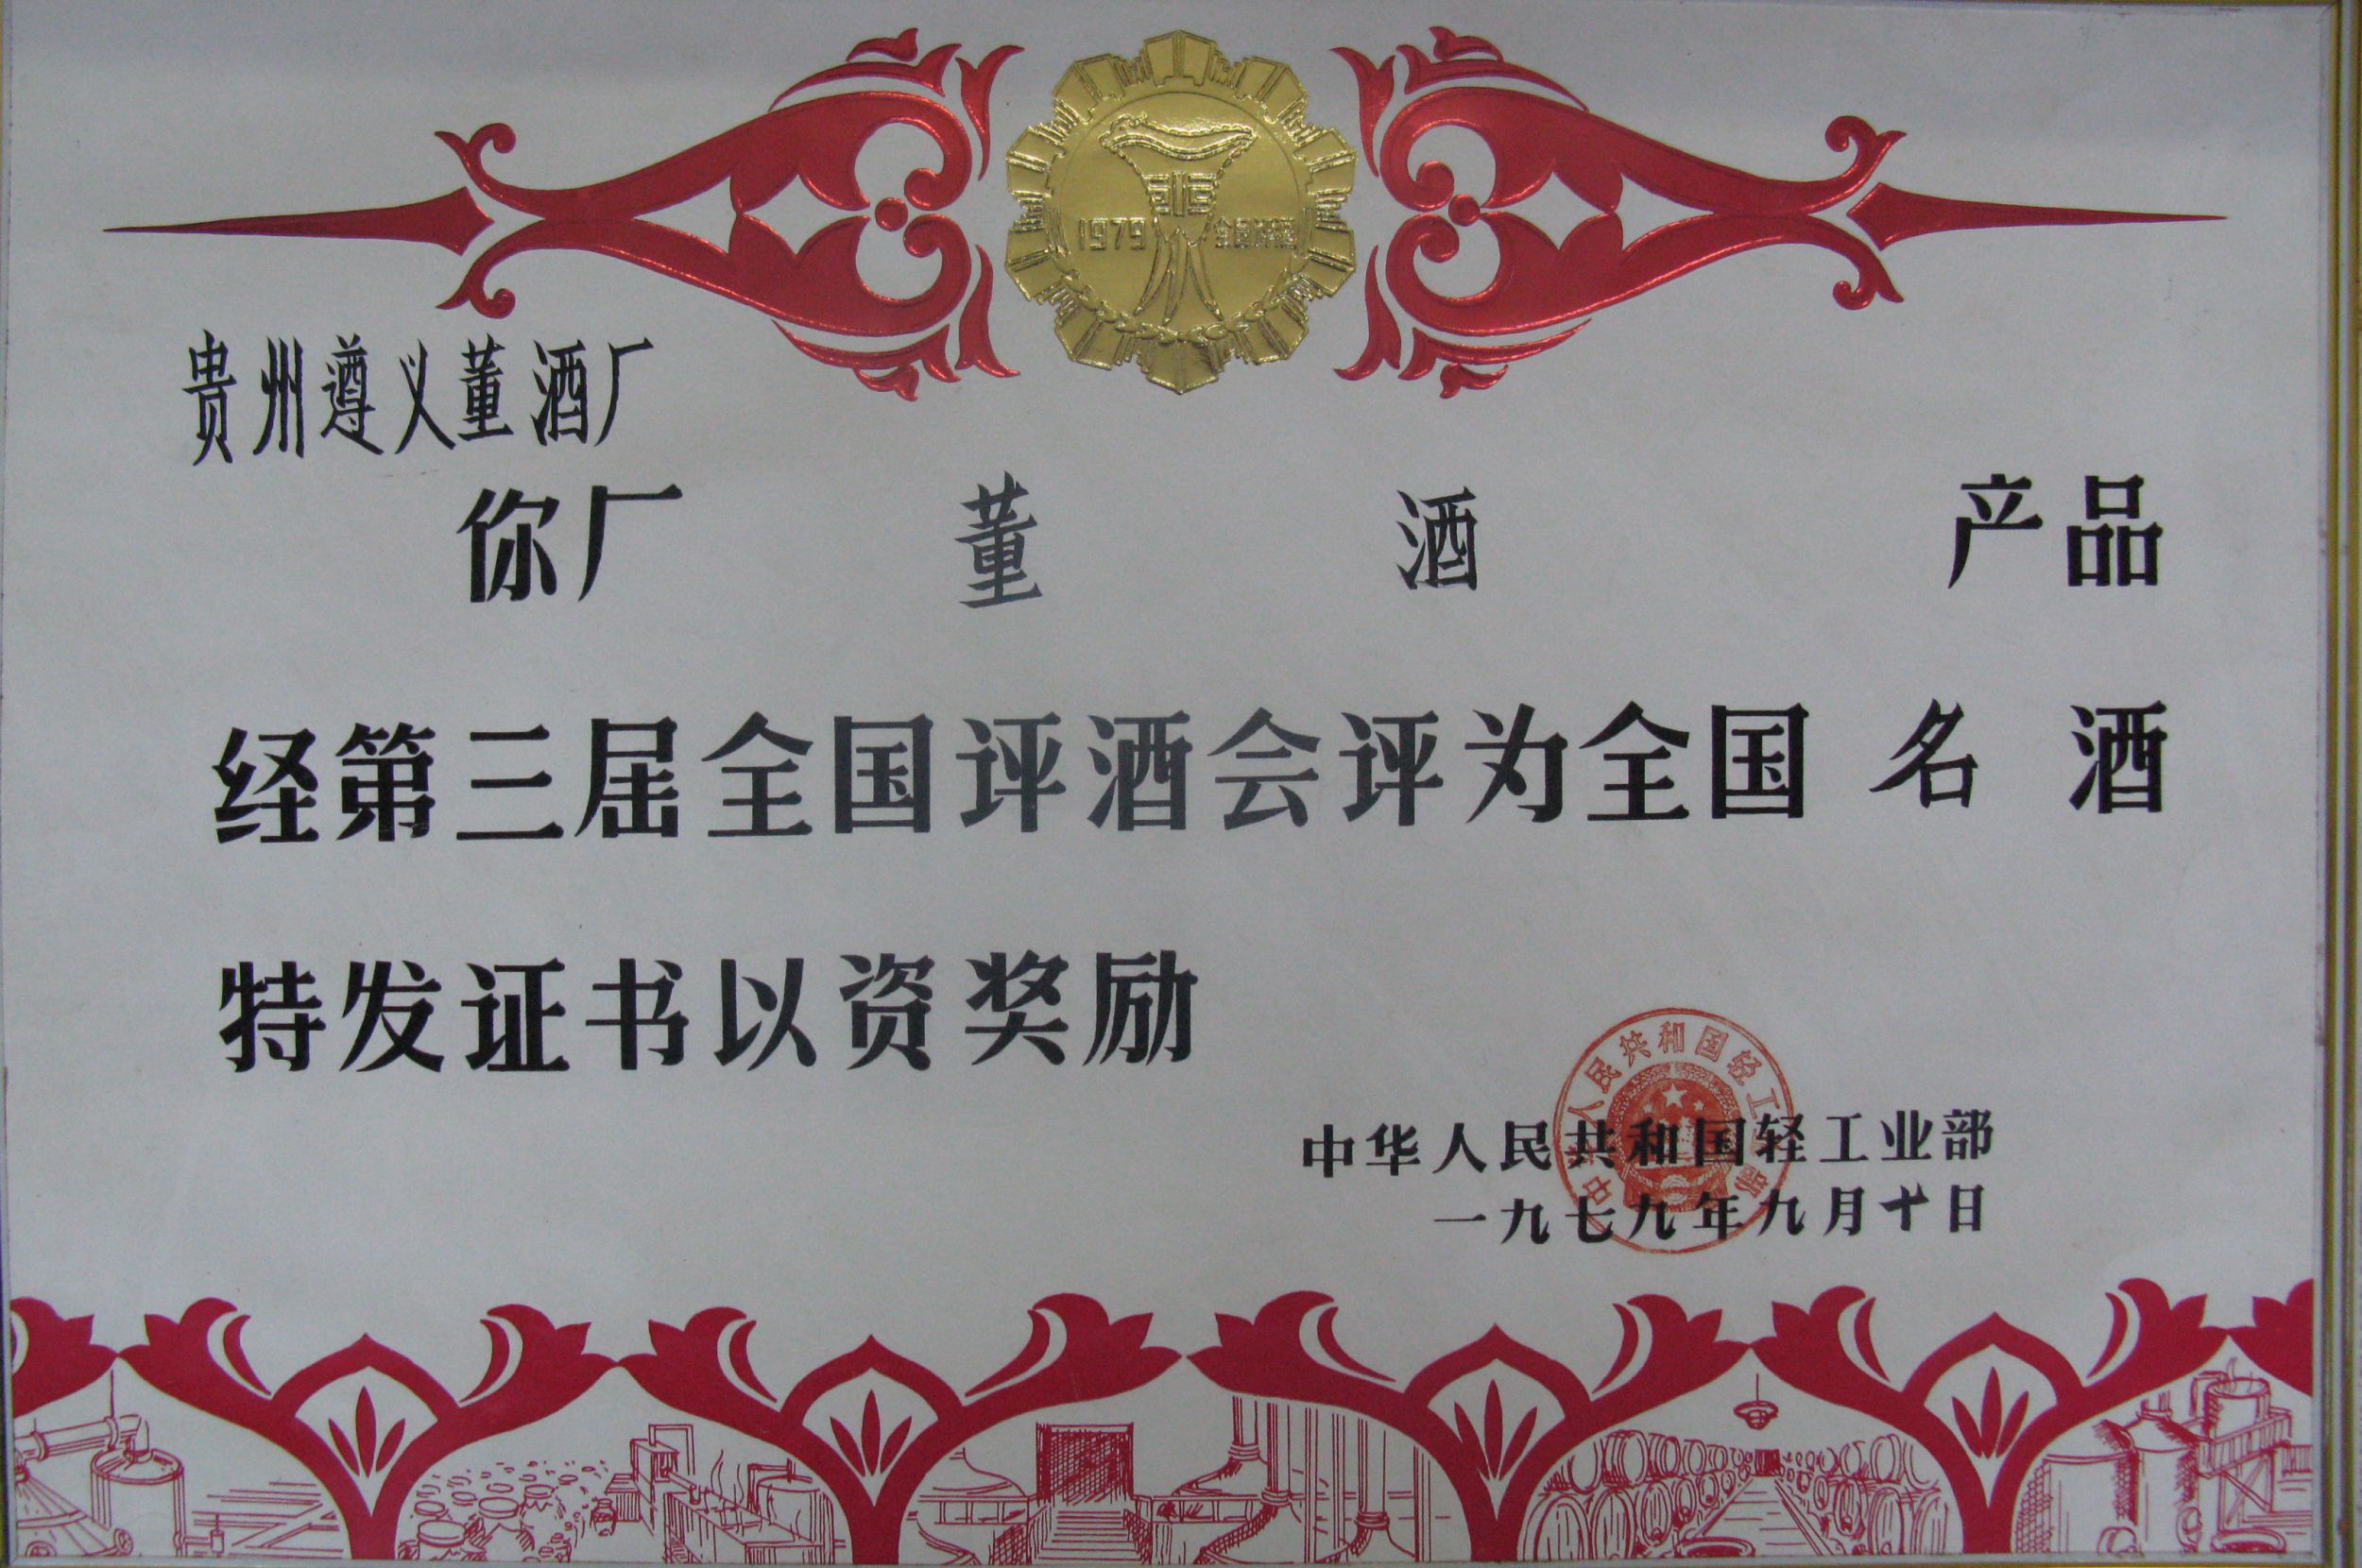 1979年董酒获得第3届“中国名酒”称号